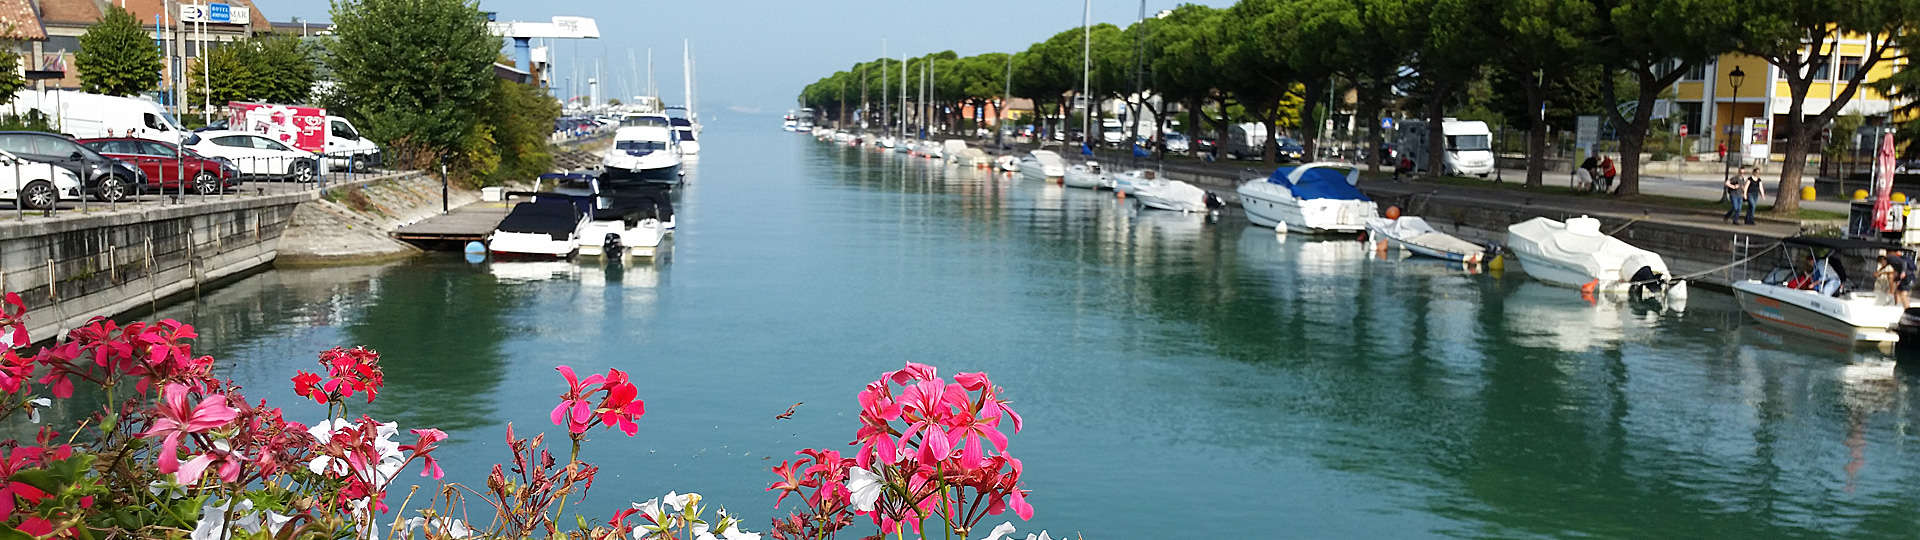 Peschiera del Garda – entdecke die Kleinstadt am Südostufer des Gardasee